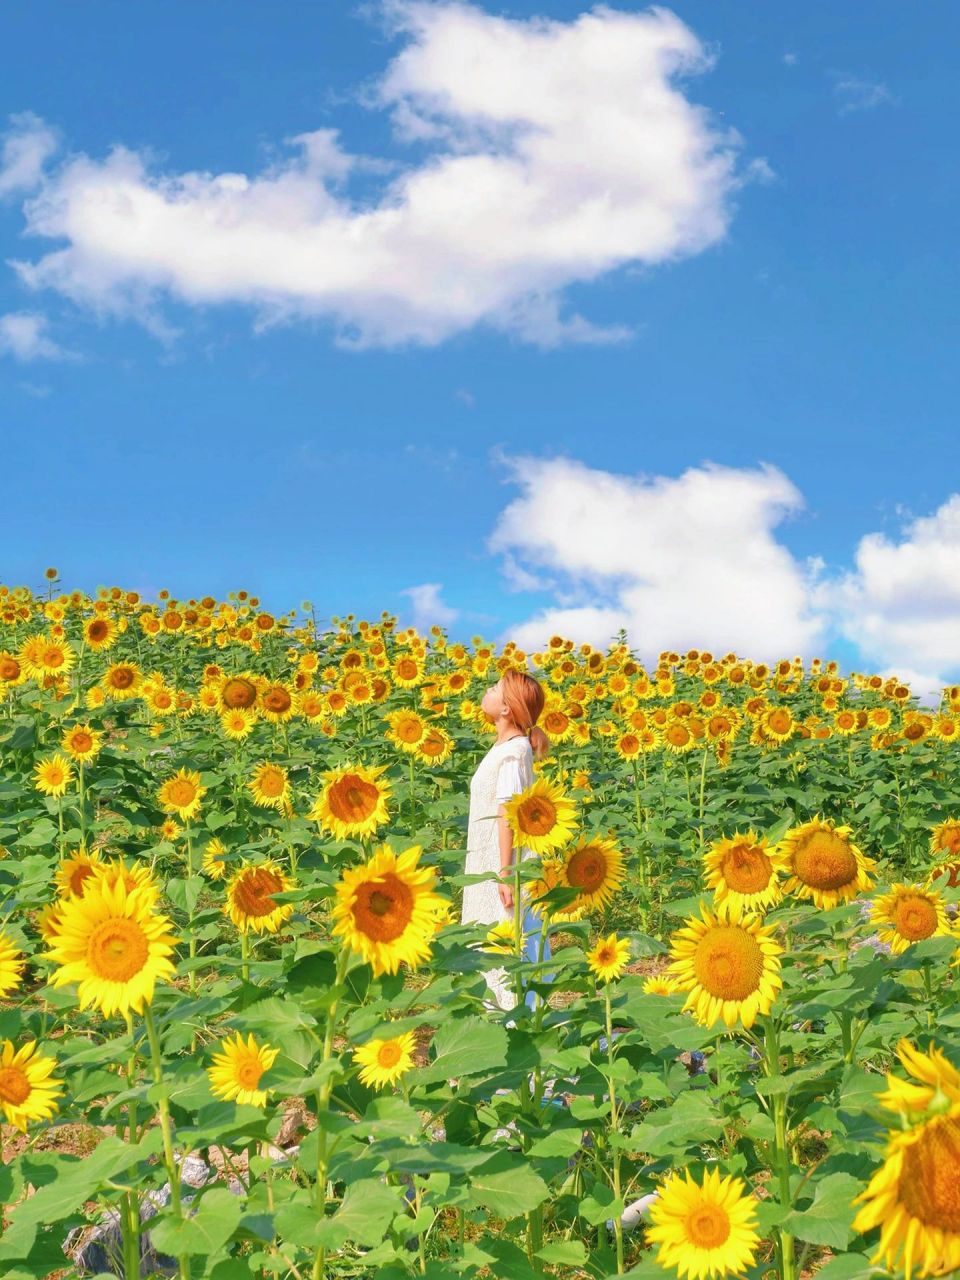 宫崎骏向日葵壁纸图片